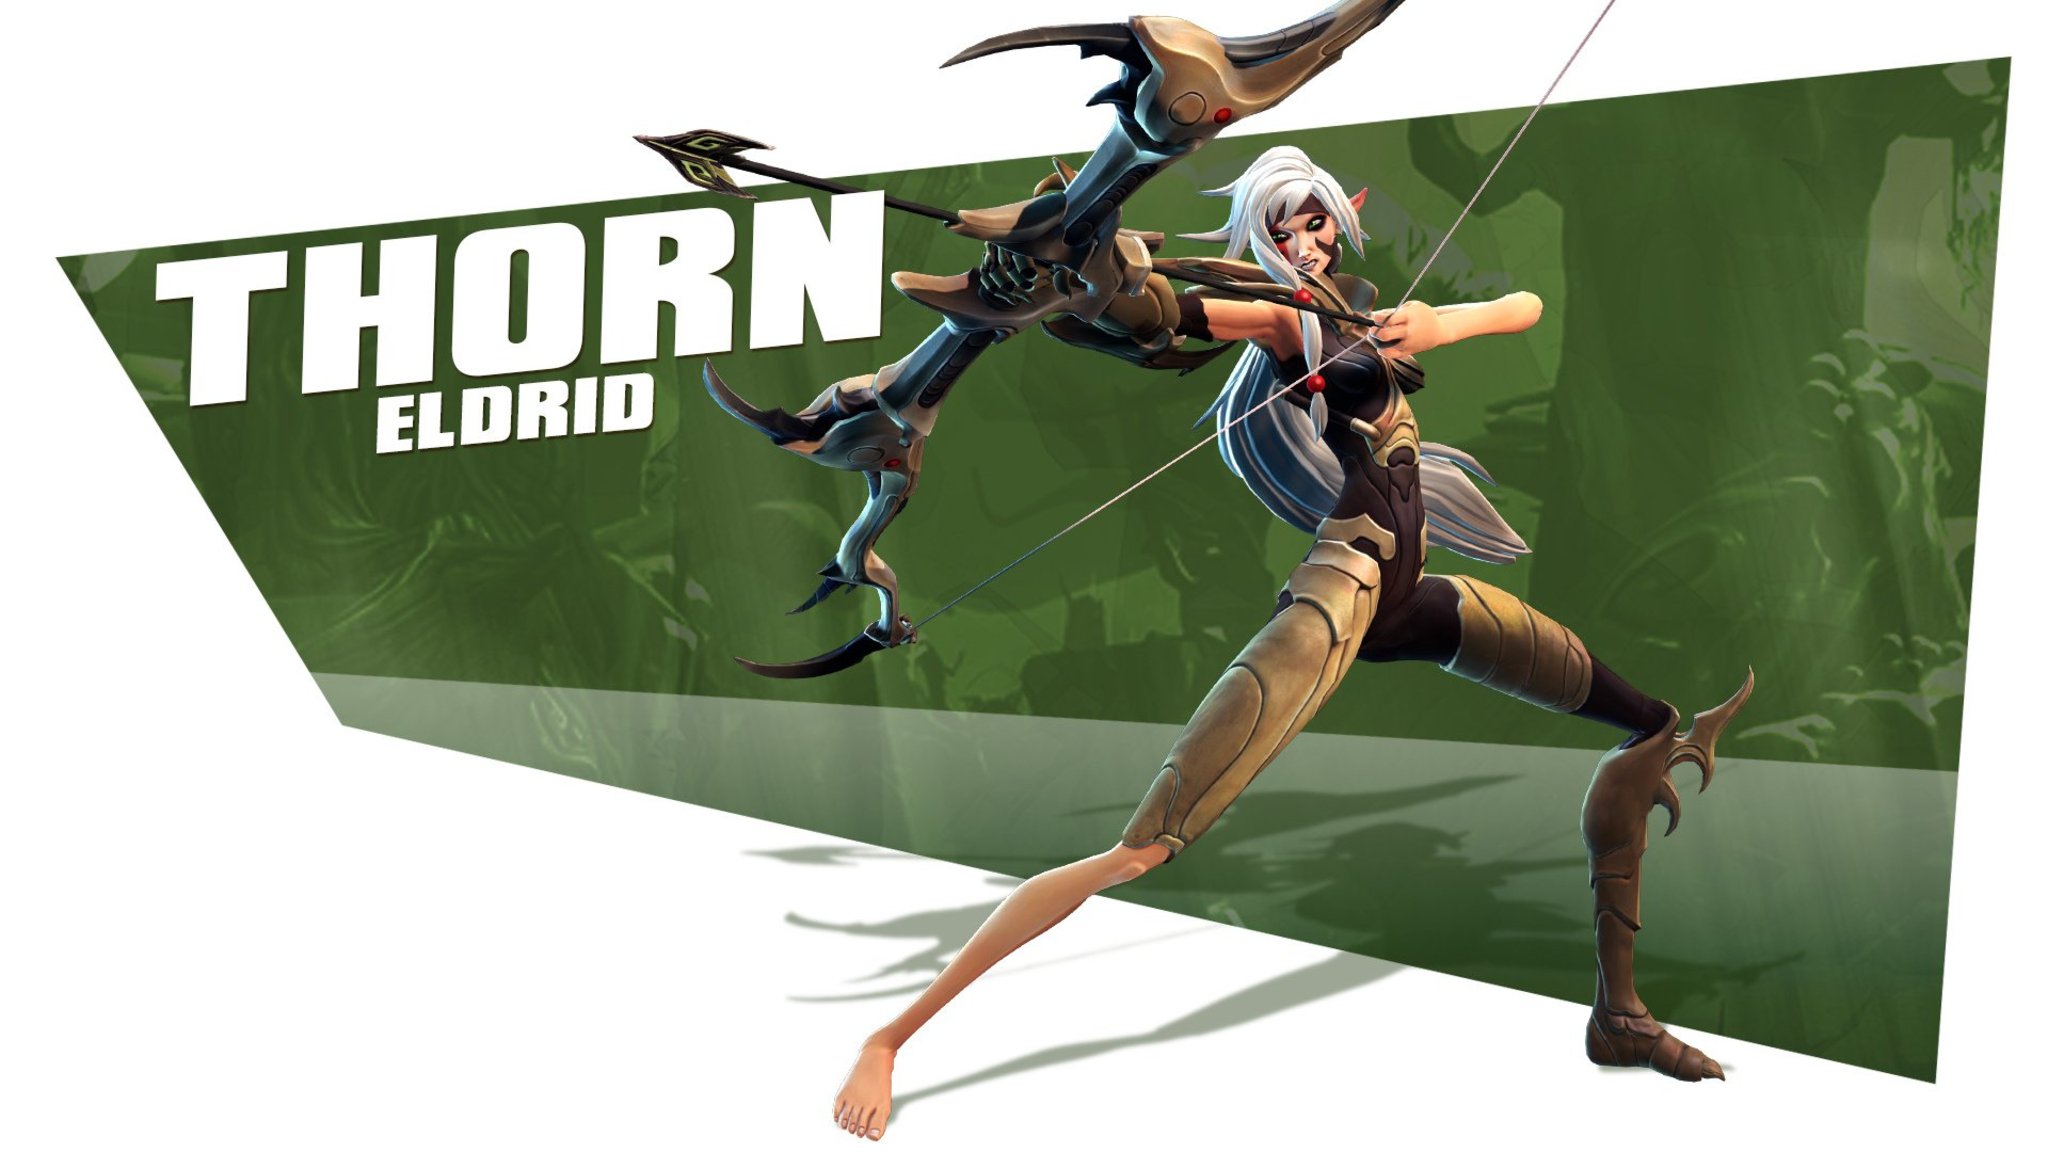 Thorn Eldrid Battleborn Wallpaper - Battleborn Thorn Feet , HD Wallpaper & Backgrounds